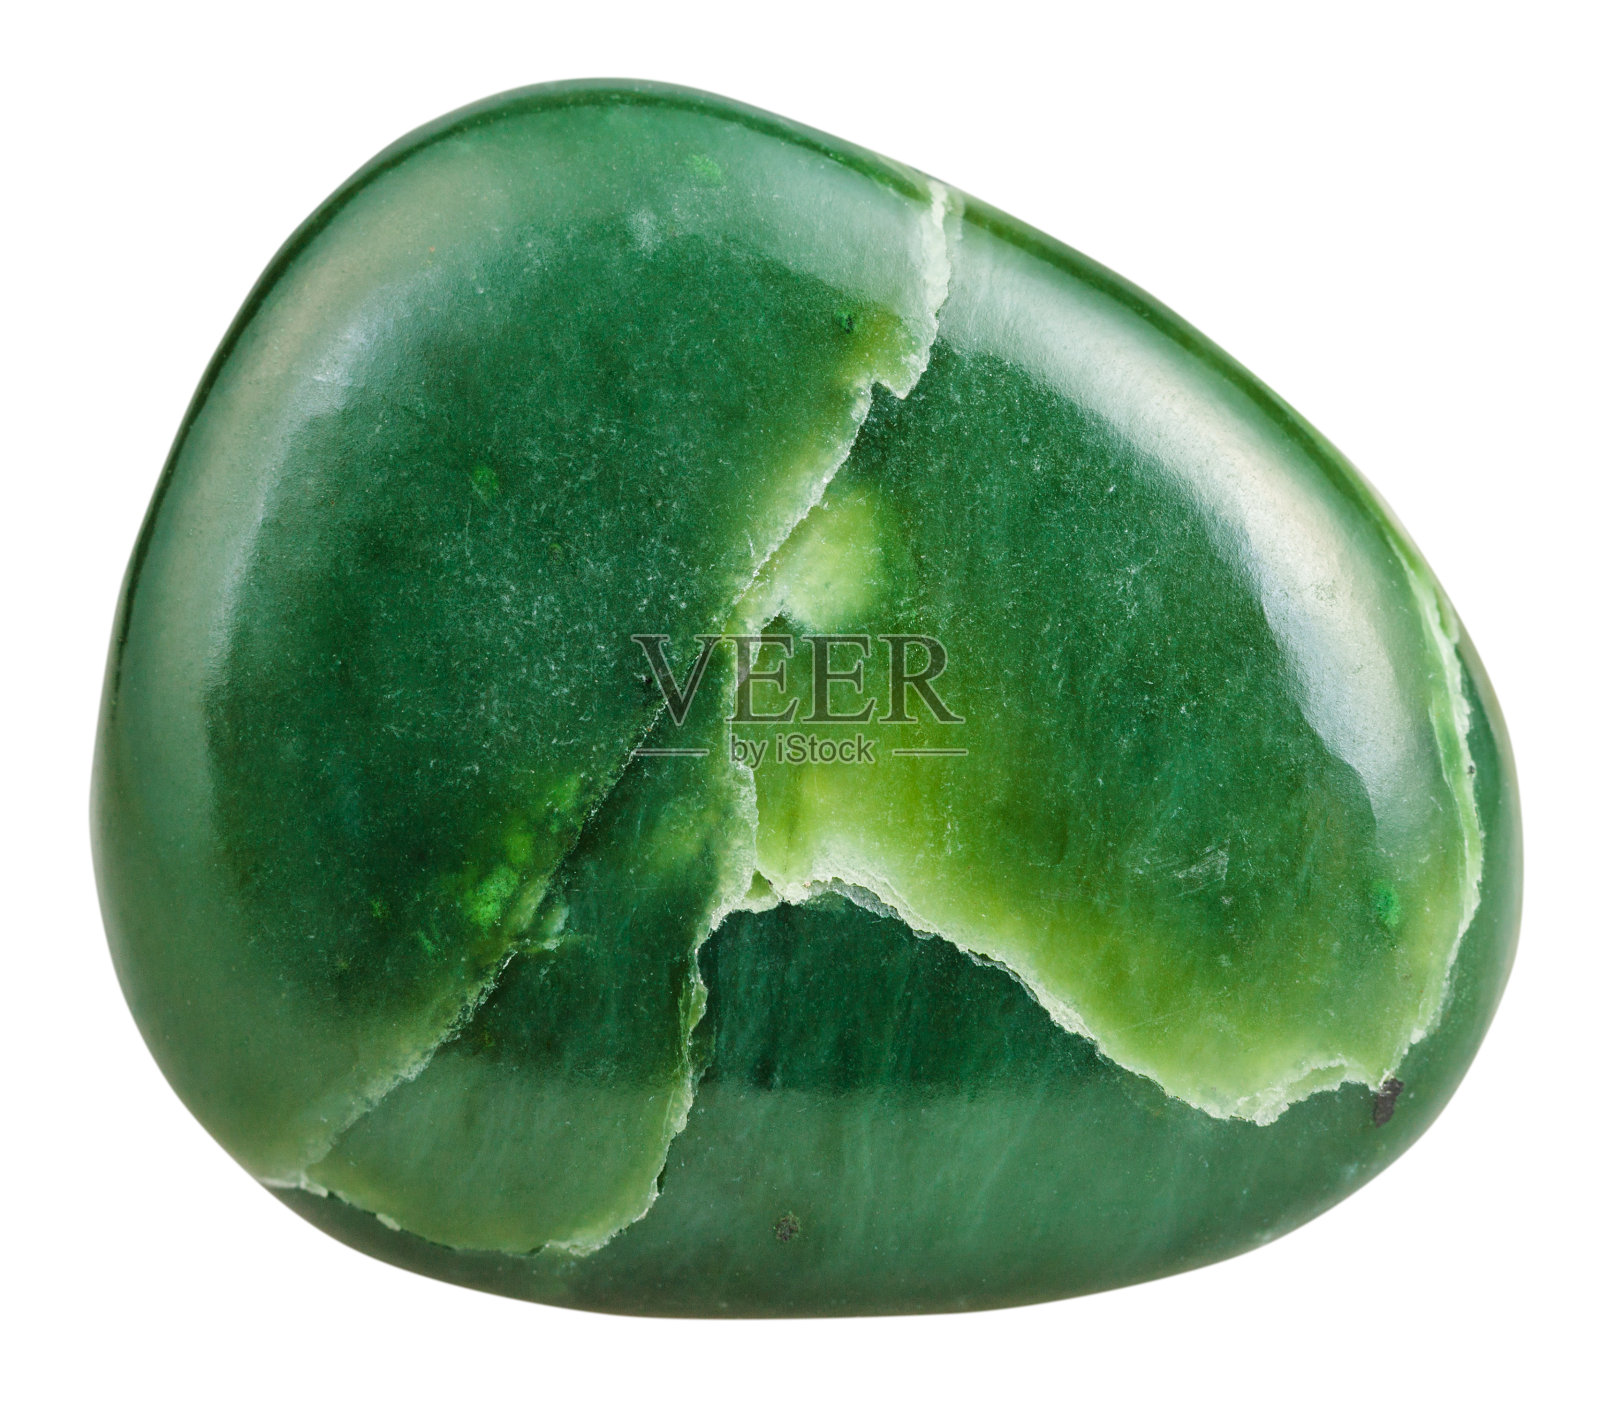 抛光的绿色软玉(玉)矿物宝石石照片摄影图片